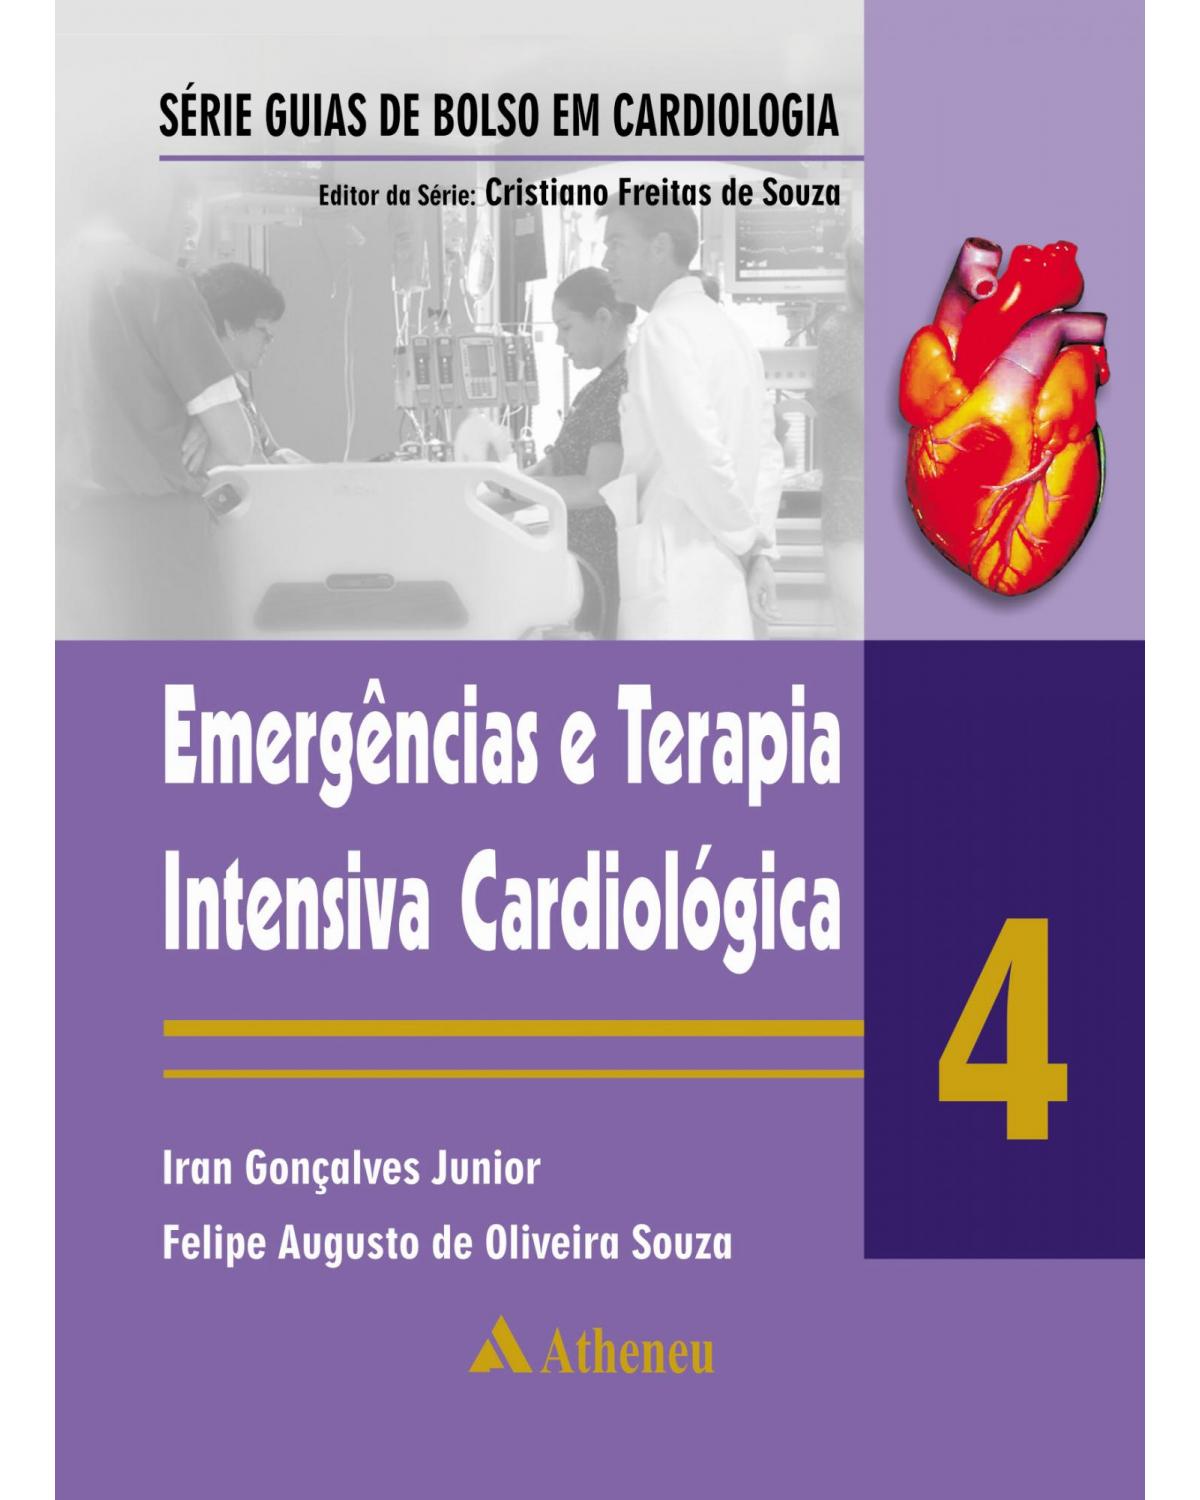 Emergências e terapia intensiva cardiológica - Volume 4:  - 1ª Edição | 2011